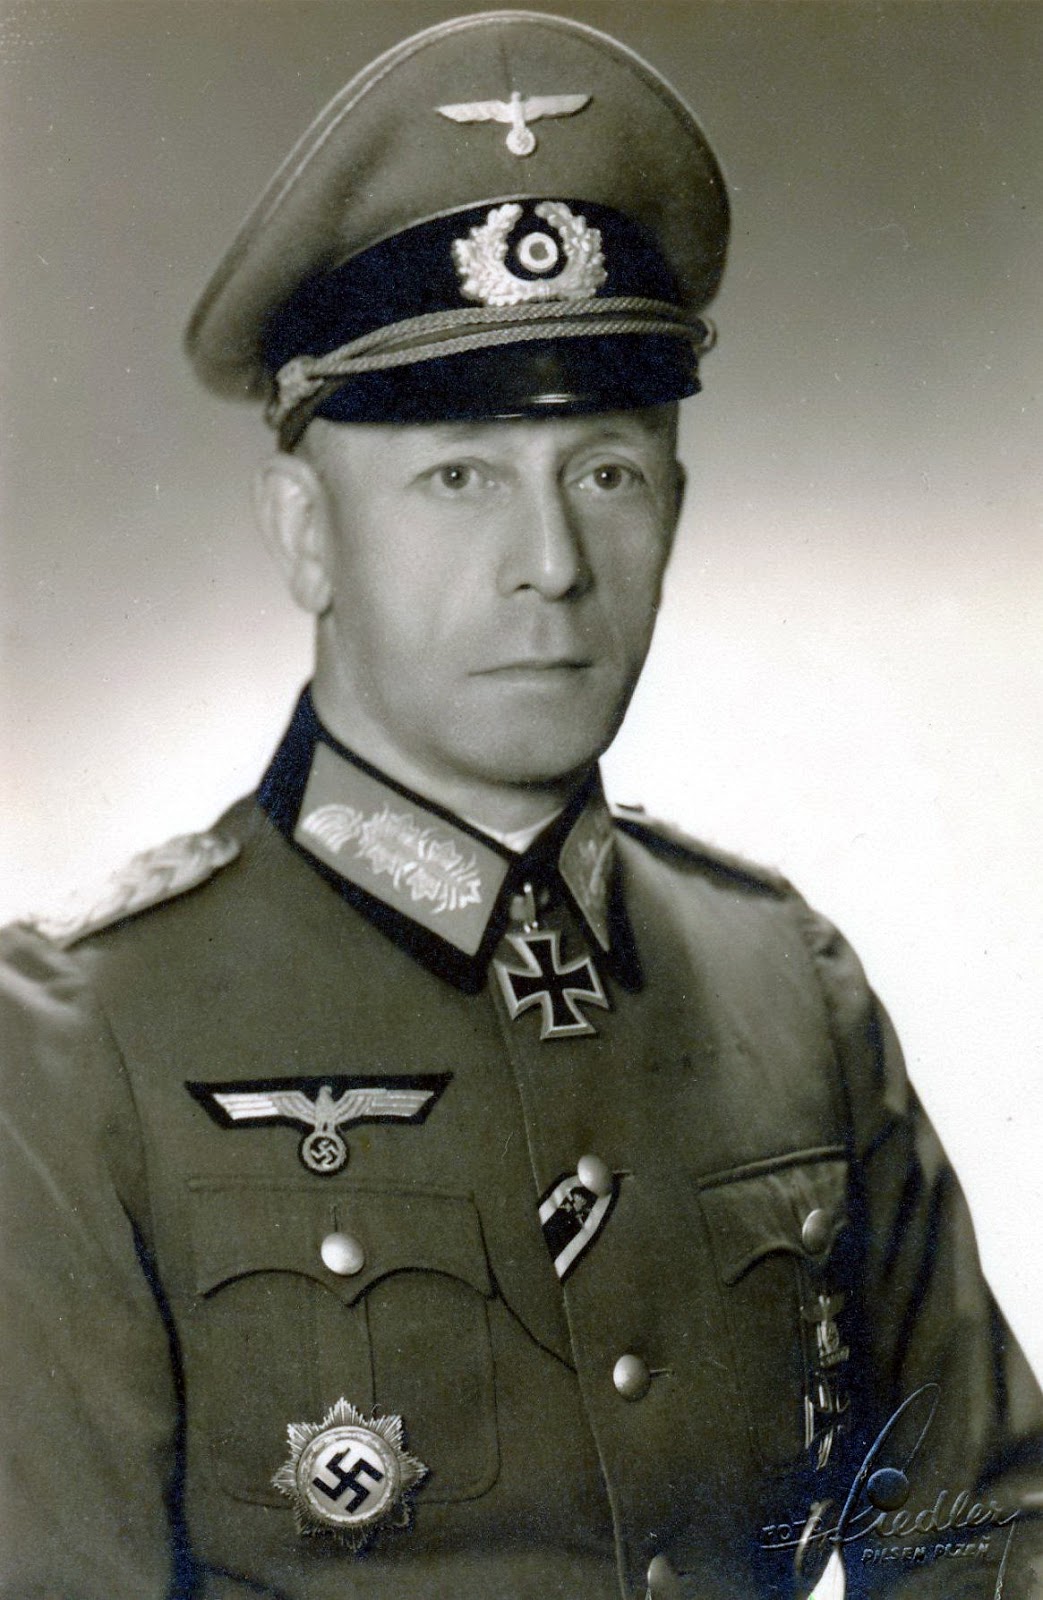 Сделать по немецкому по фото. Дитрих фон Заукен. Герхард Линднер генерал вермахта. Гельмут Вейдлинг немецкий генерал. Генерал фельдмаршал вермахта униформа.